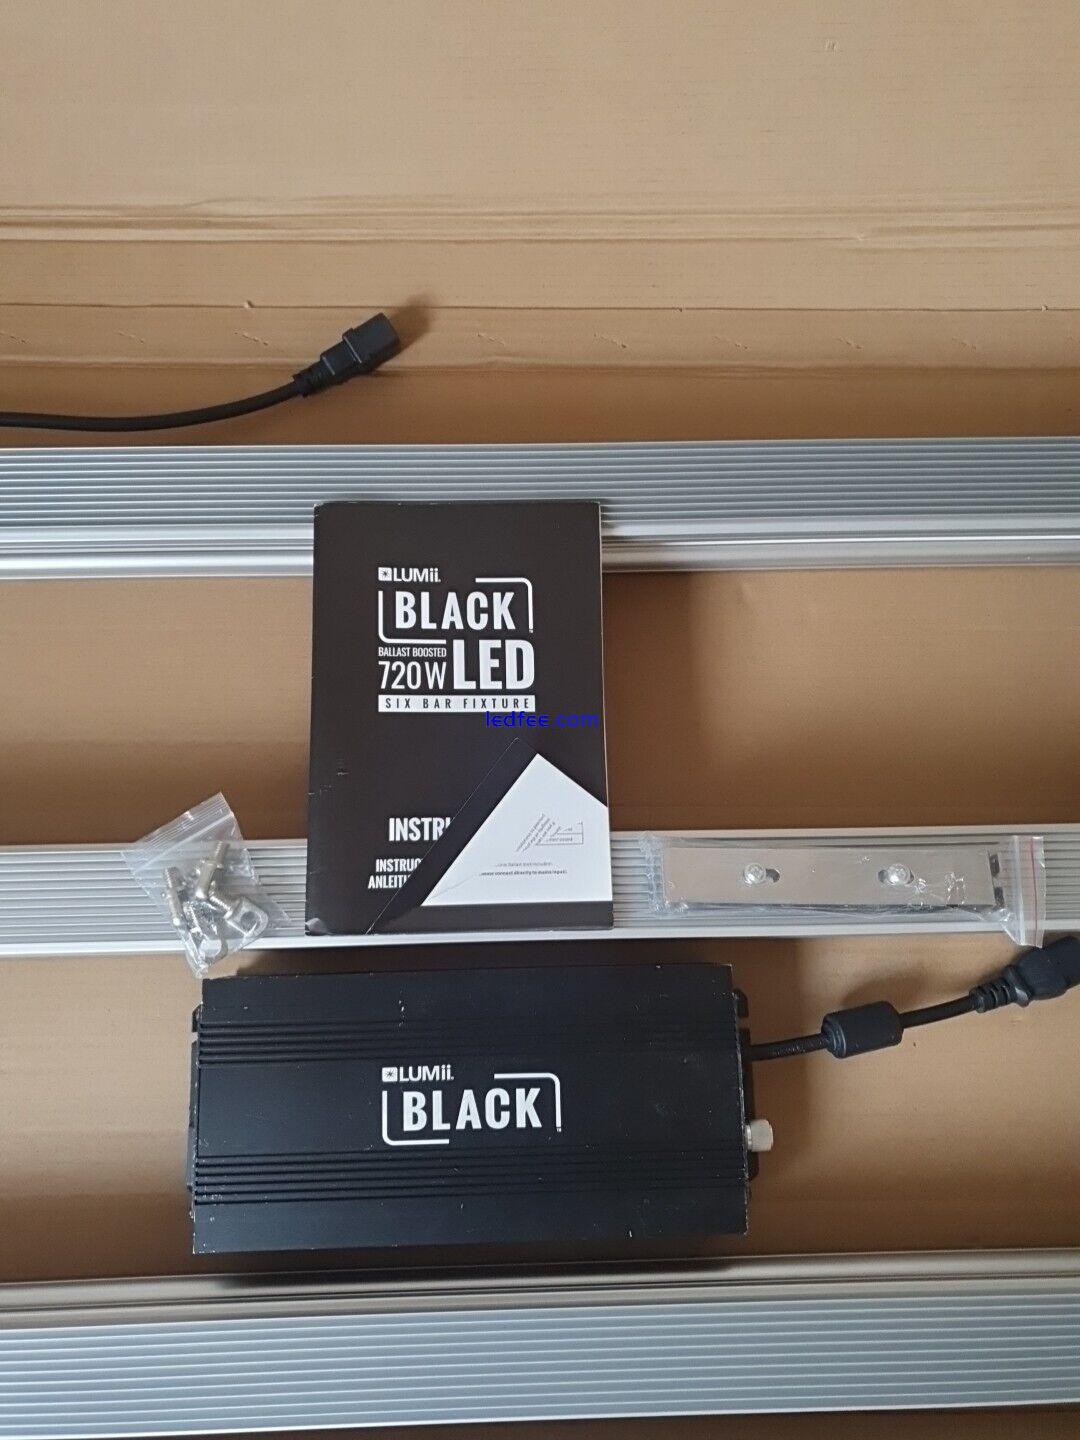 LUMii BLACK LED 720w Full Spectrum Grow Light Kit 2.6 µmol/w Hydroponics 4 